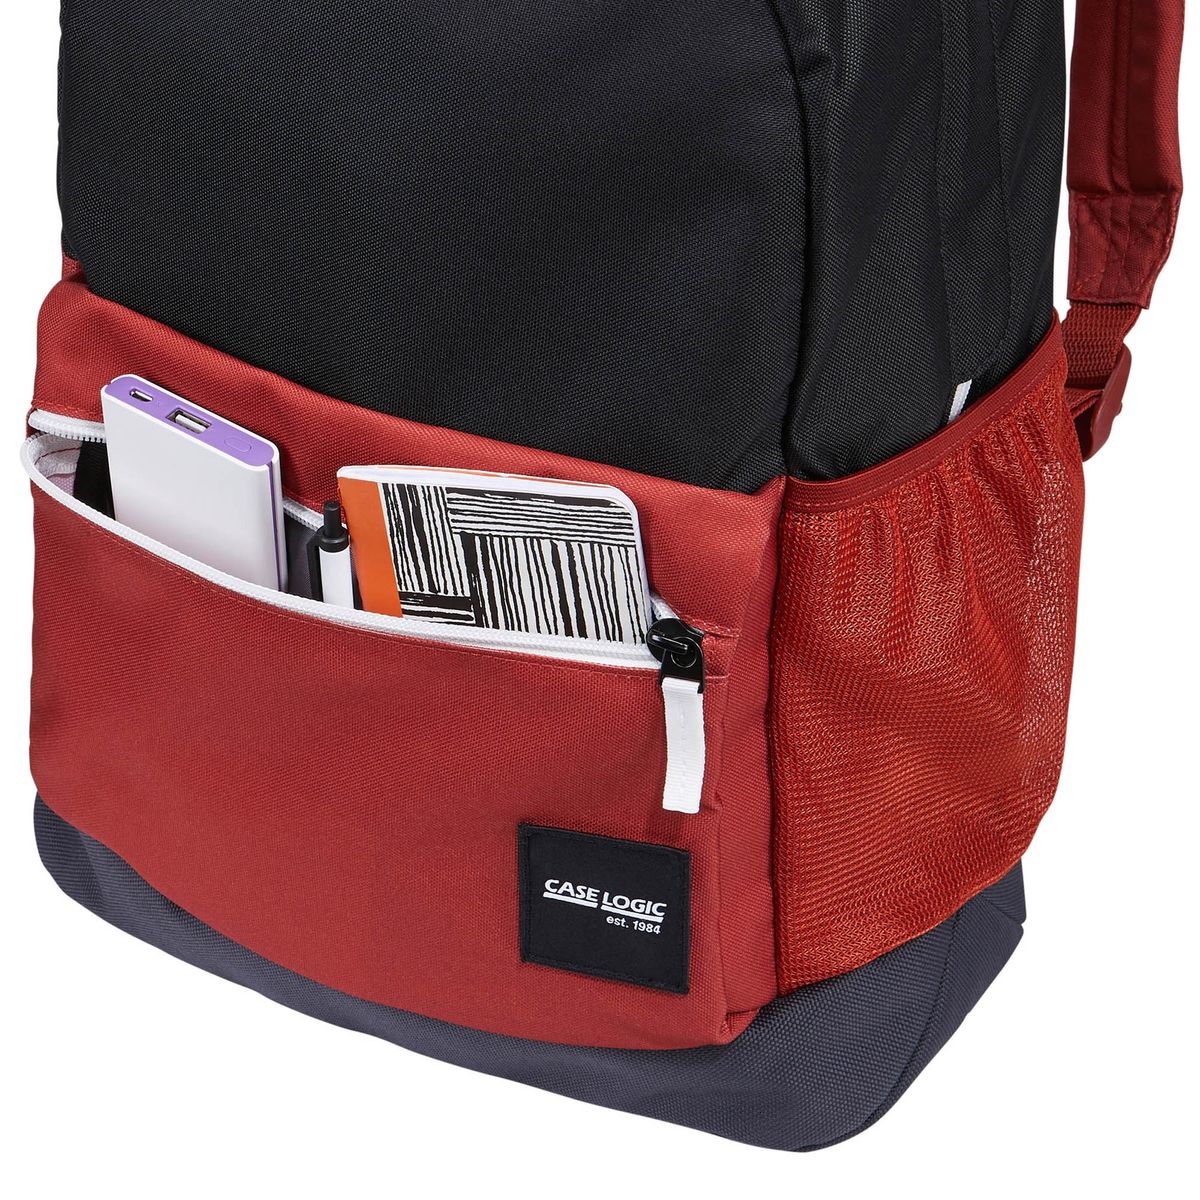 Case Logic Commence Backpack 24L backpack